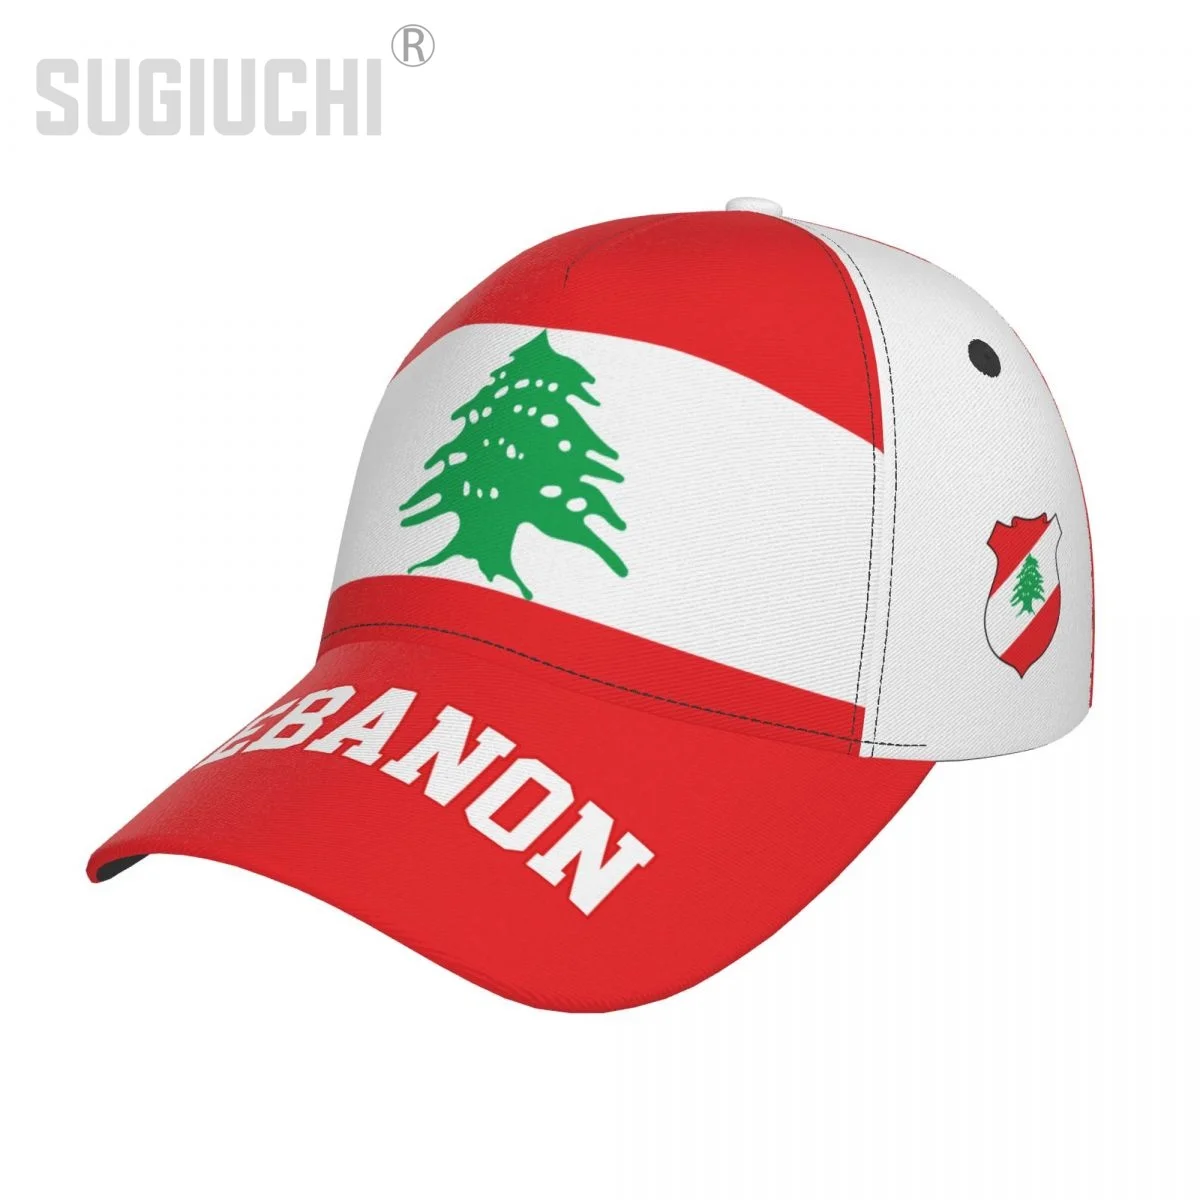 

Unisex Lebanon Flag Lebanese Adult Baseball Cap Patriotic Hat for Baseball Soccer Fans Men Women